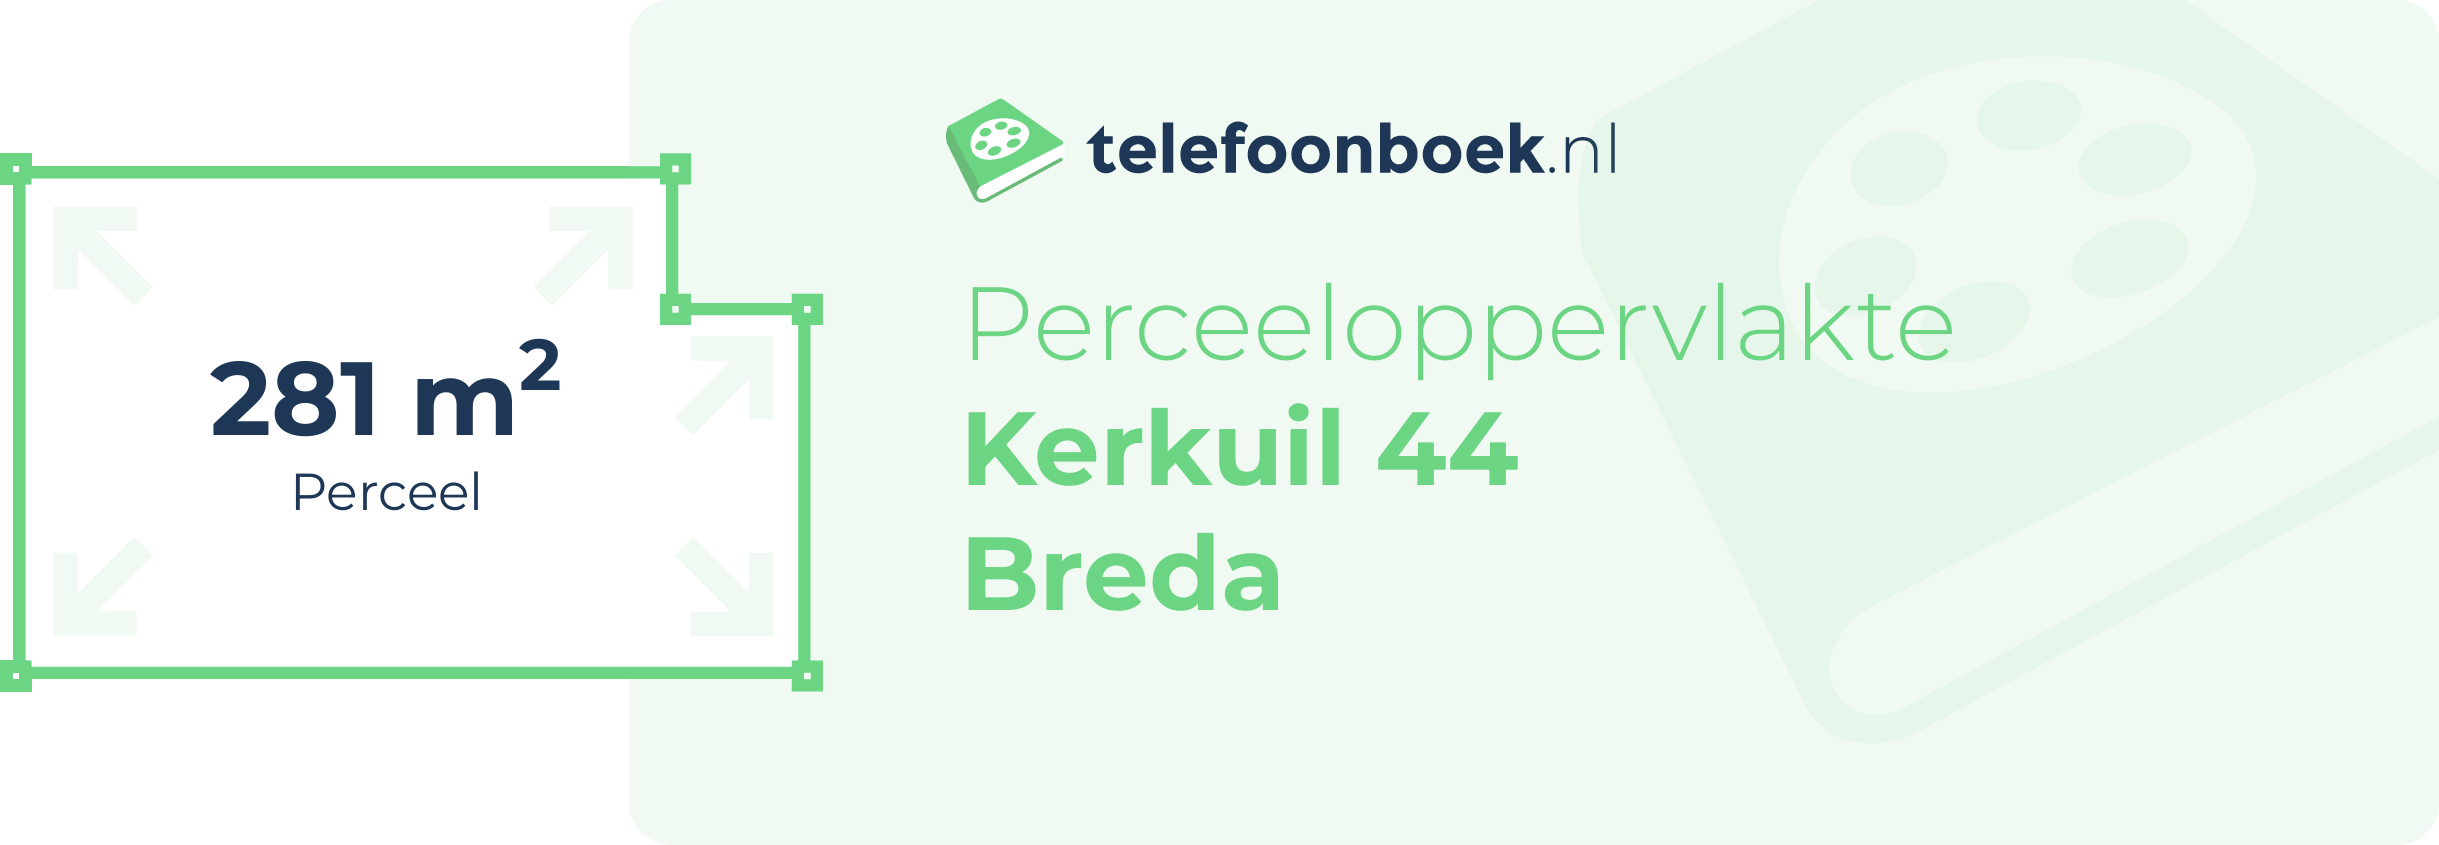 Perceeloppervlakte Kerkuil 44 Breda